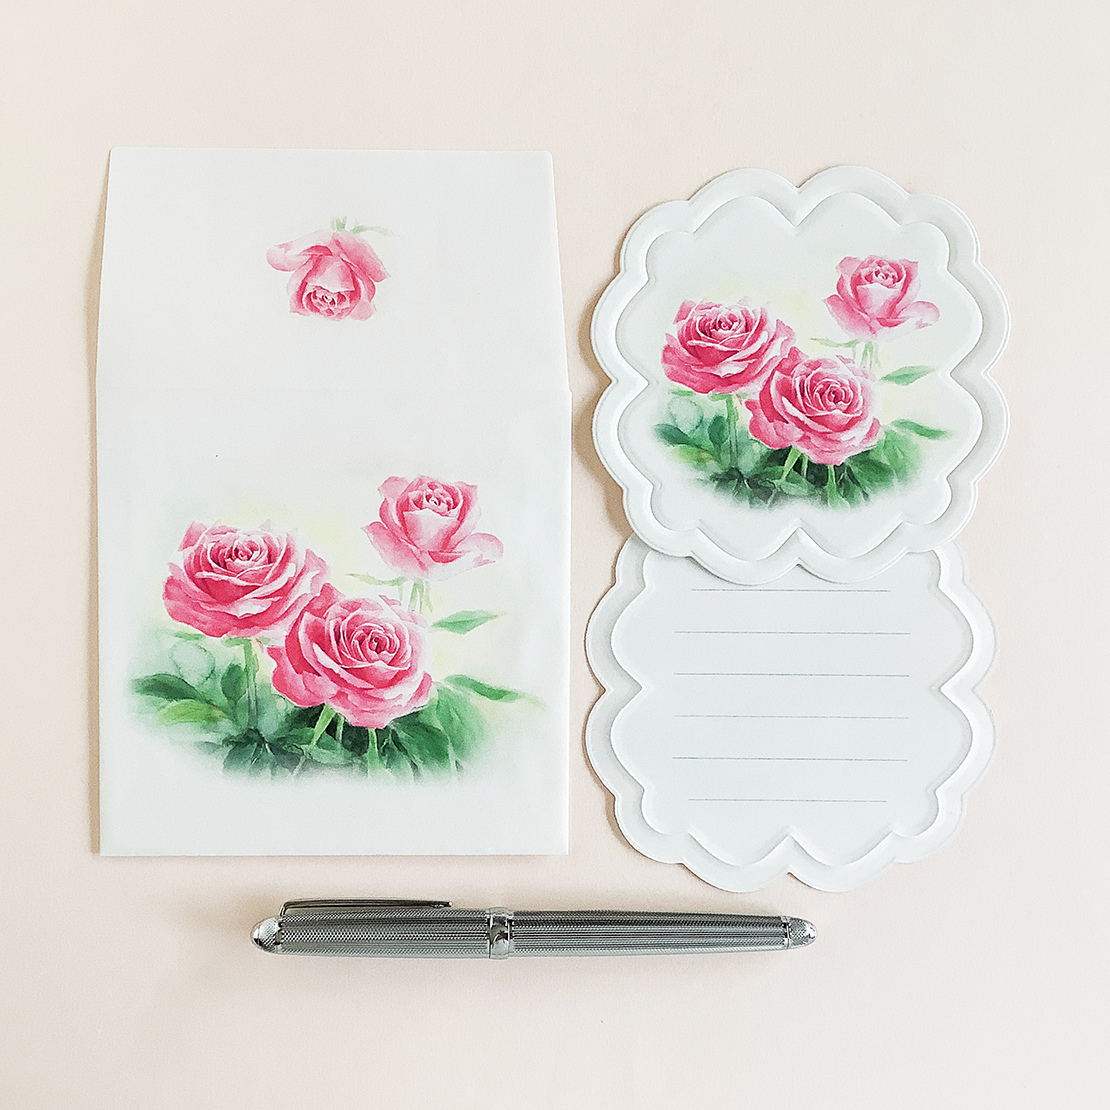 Roses花型ダイカットメッセージカード3枚 封筒付き Iichi ハンドメイド クラフト作品 手仕事品の通販